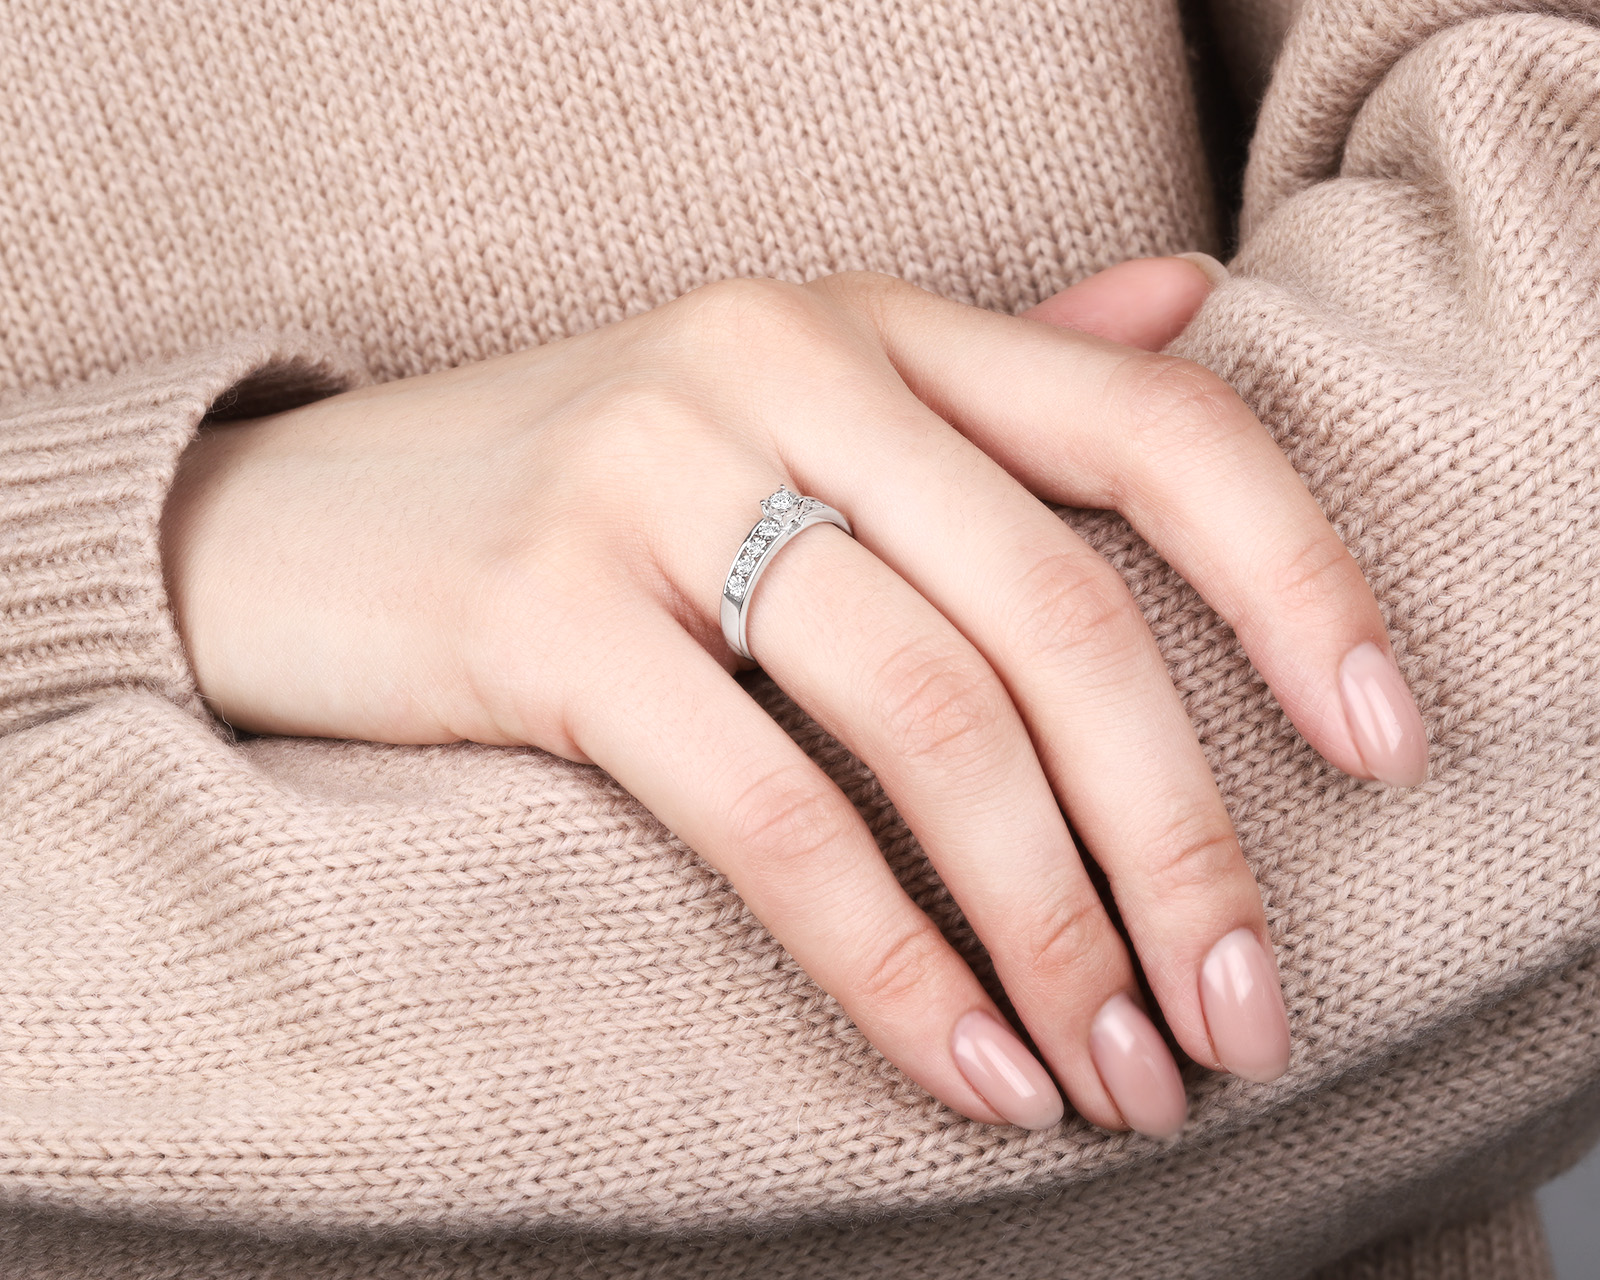 Модное золотое кольцо с бриллиантами 0.10ct